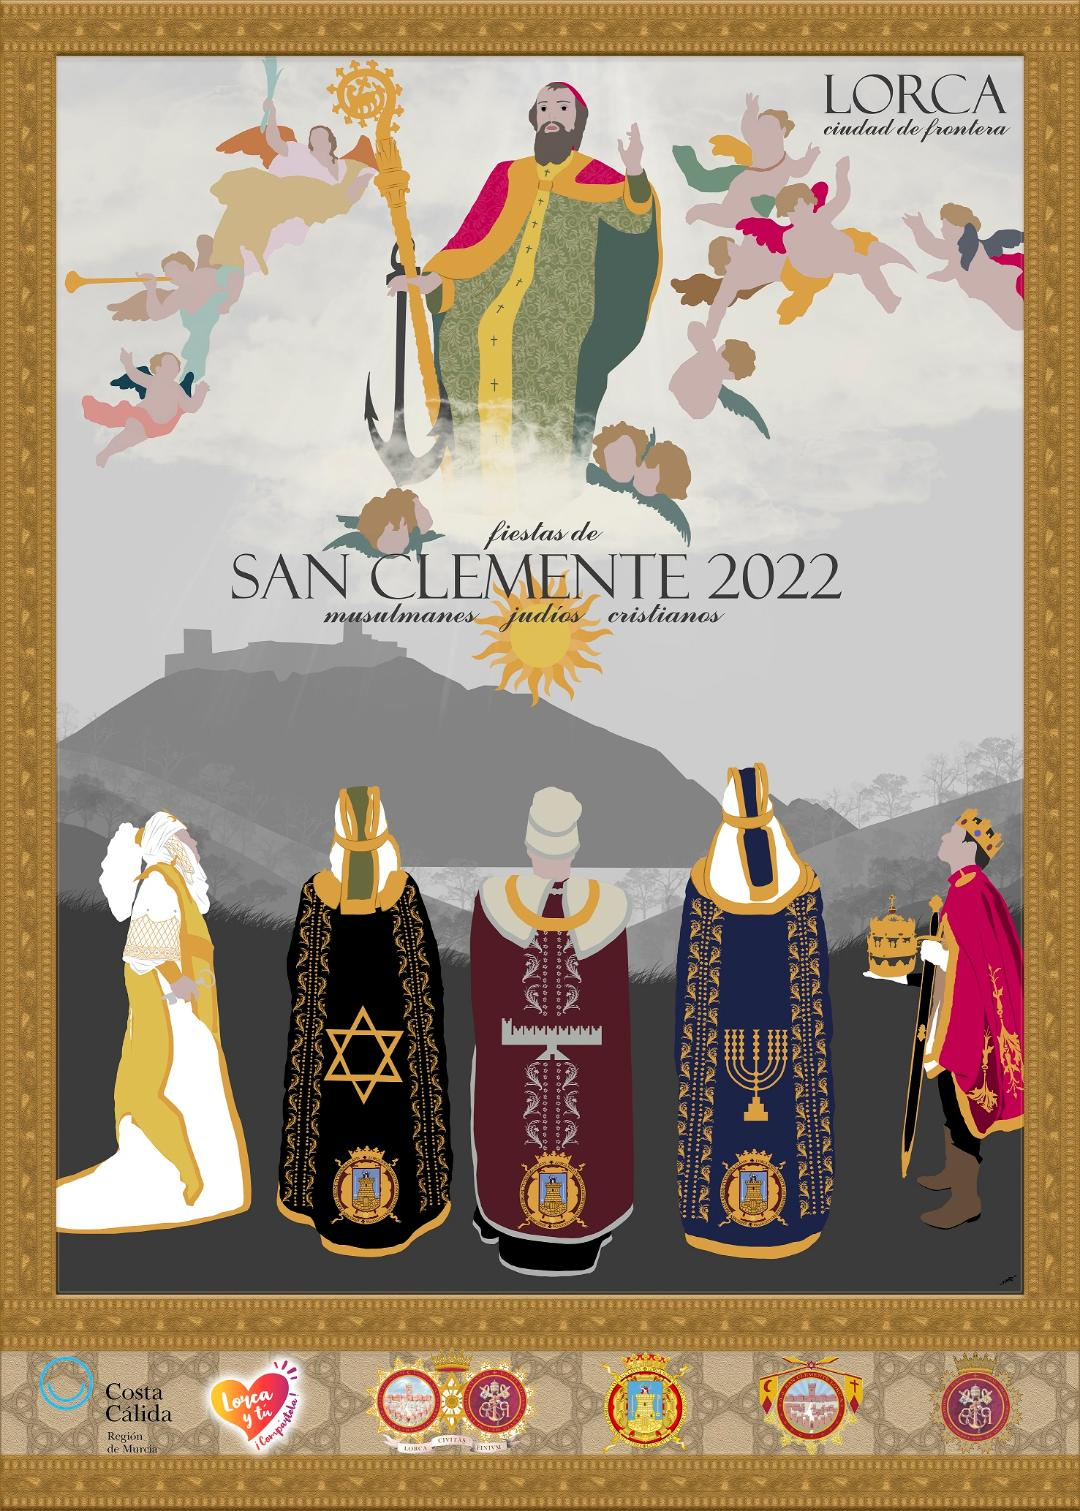 Presentado el cartel de las fiestas patronales de San Clemente 2022, realizado por la lorquina Natalia Martínez Pérez. La obra será promocionada en Fitur